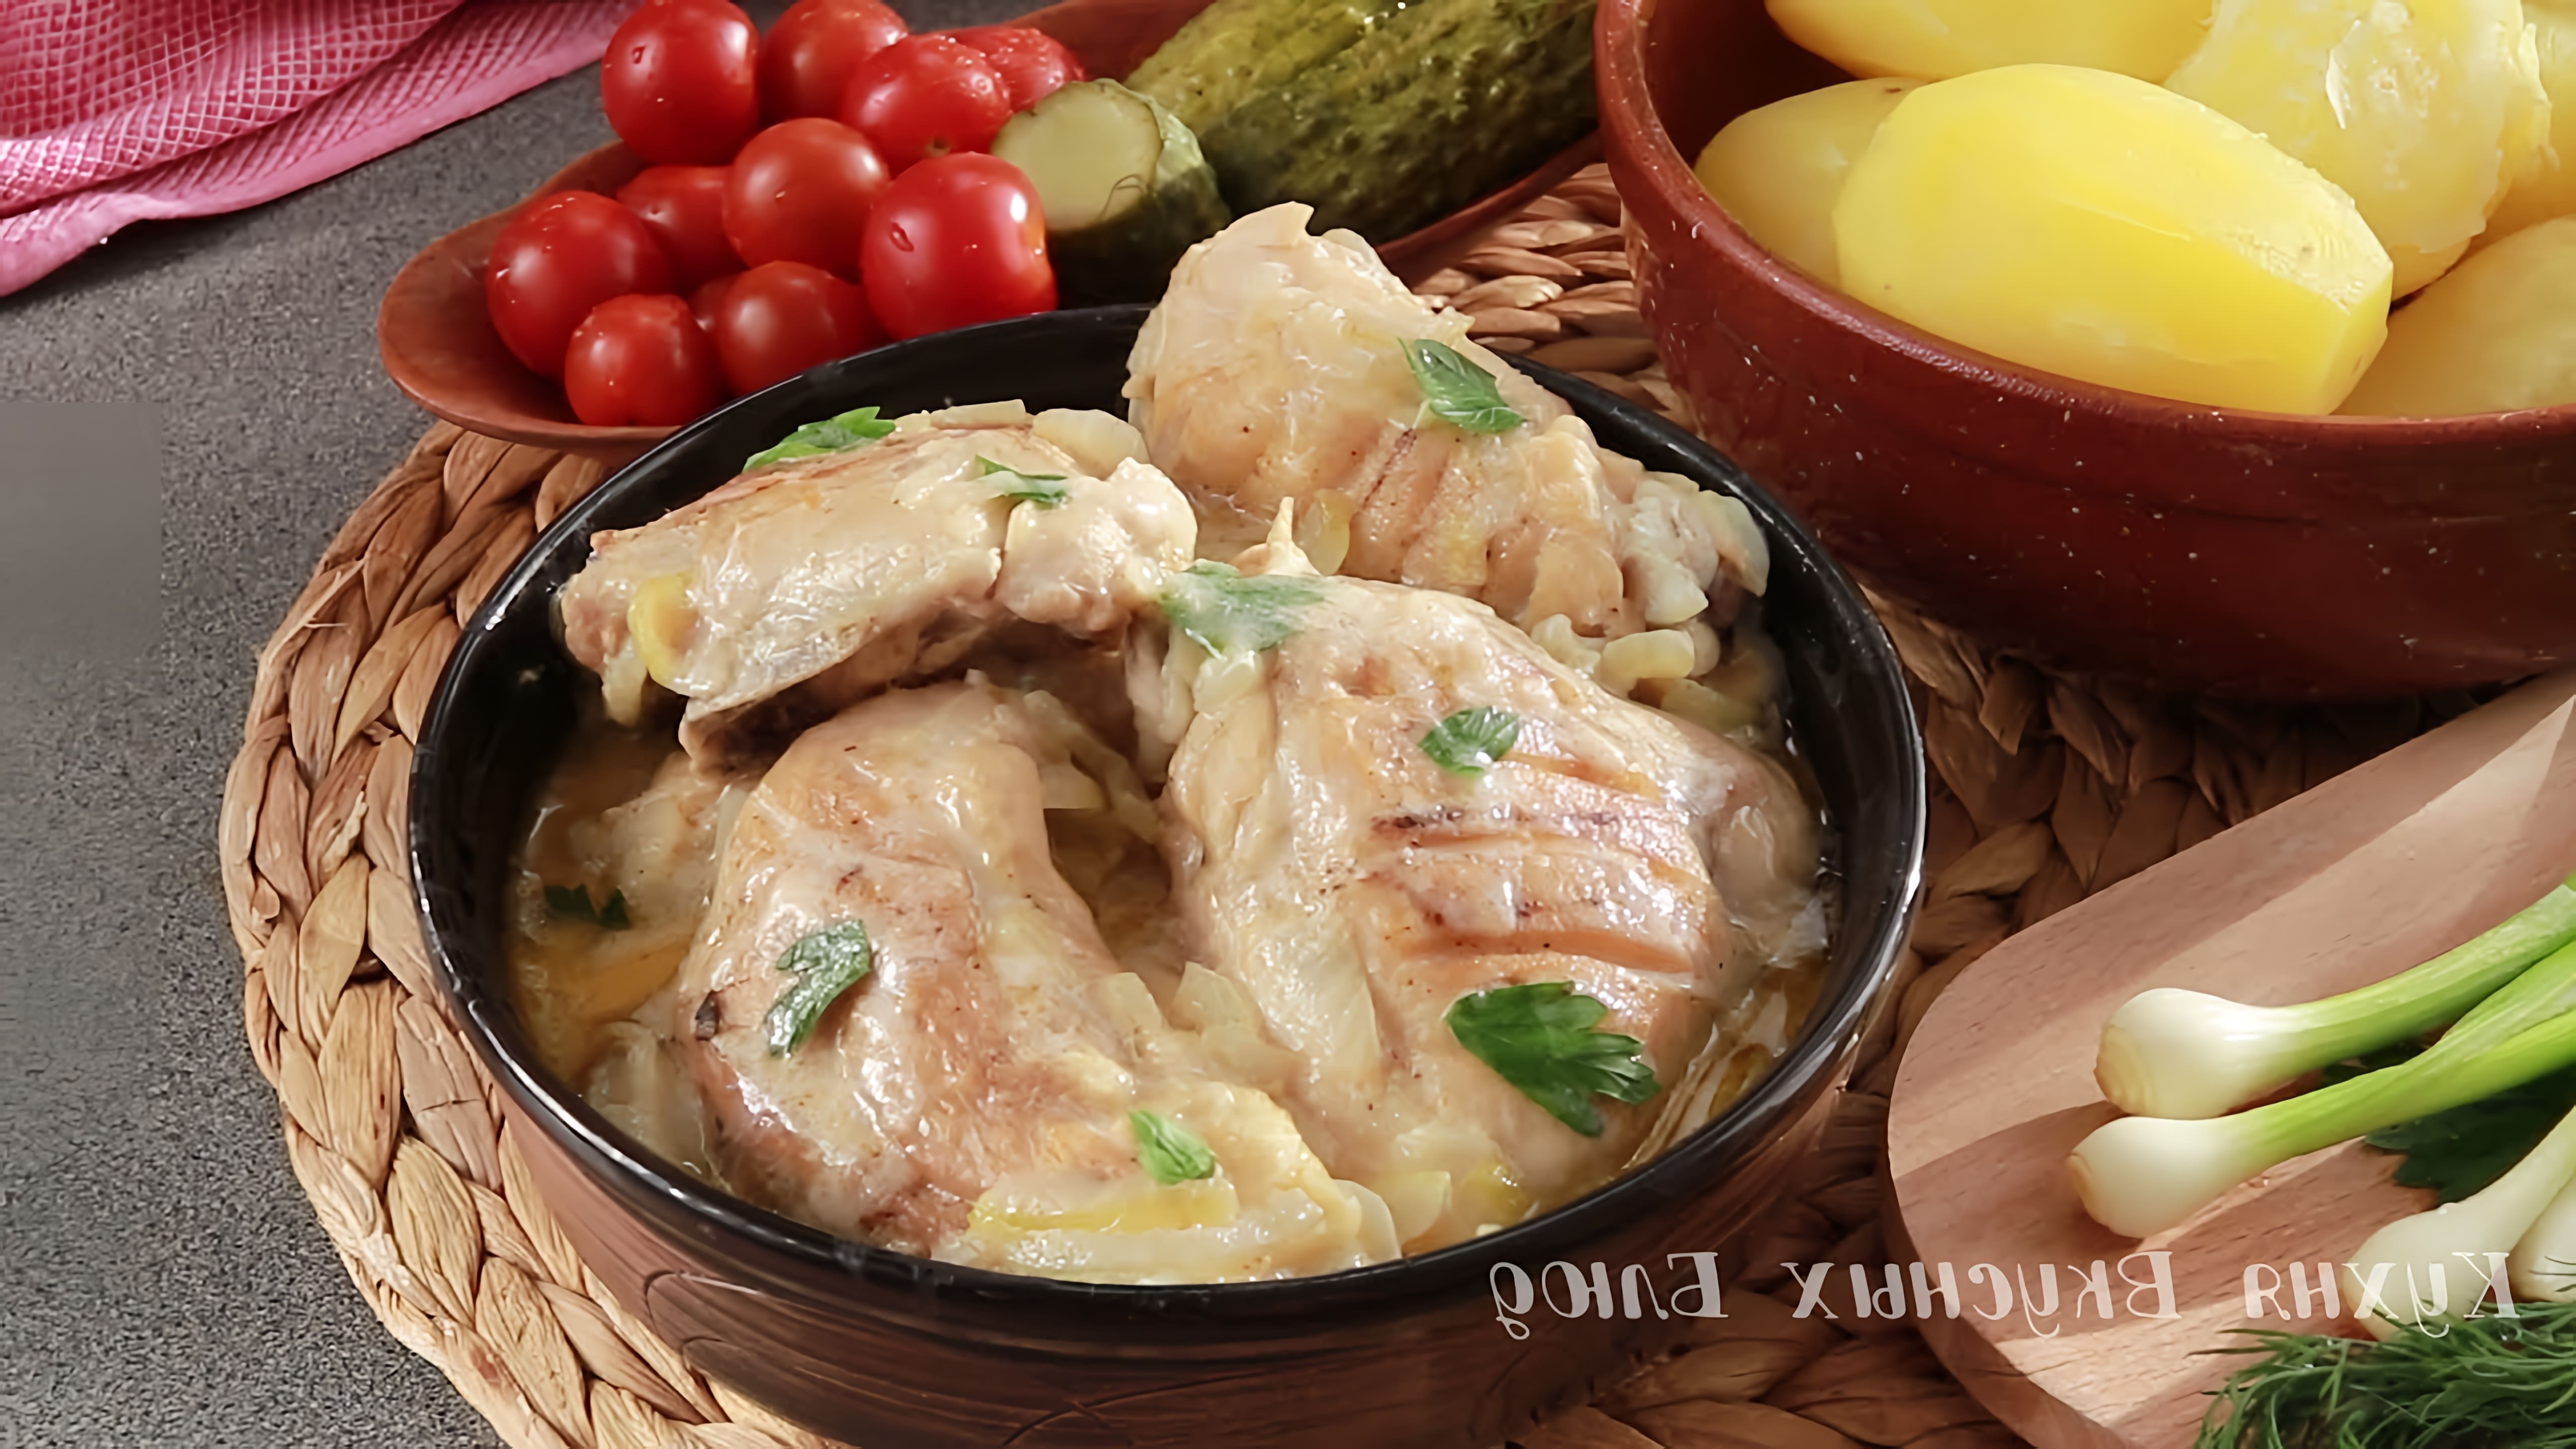 В этом видео демонстрируется рецепт приготовления курицы по-Кабардински, также известной как Гедлибже